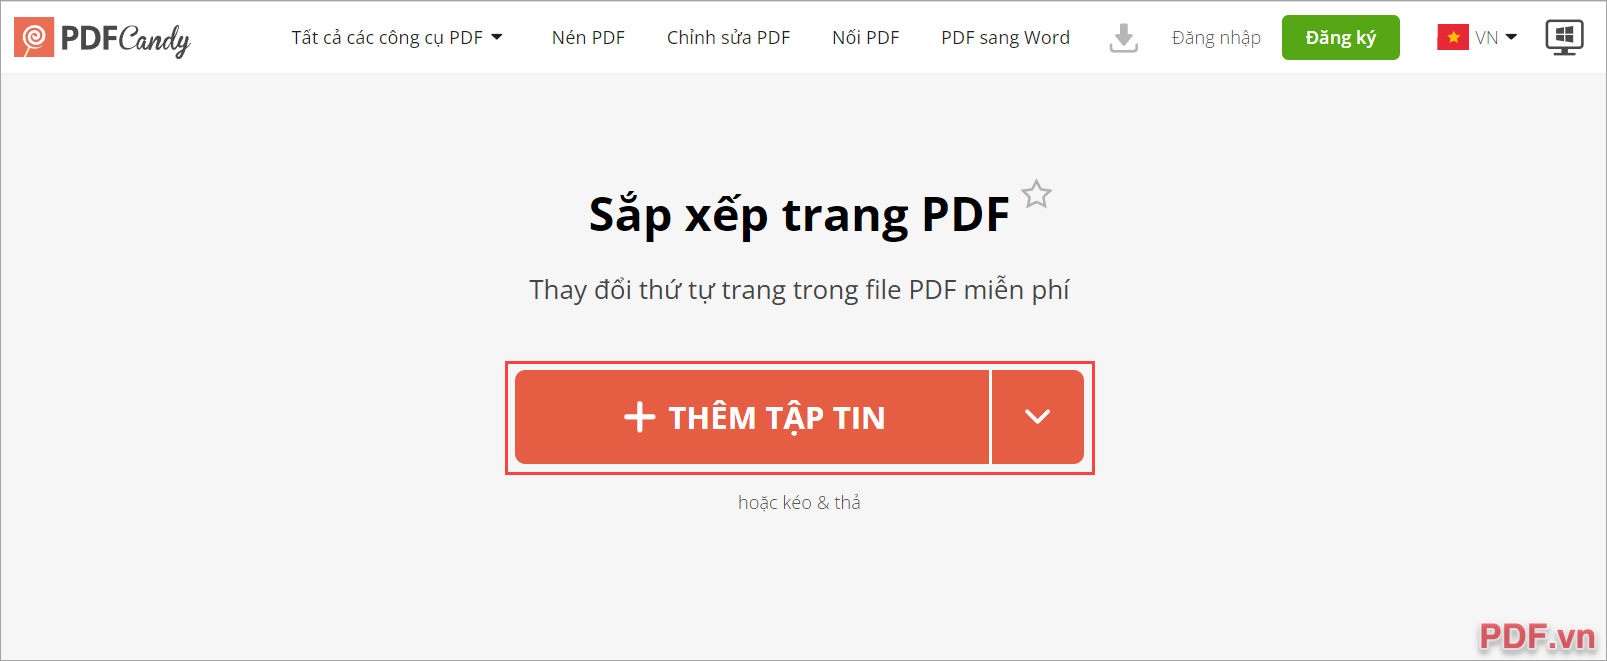 Sắp xếp lại trang PDF bằng PDF Candy Online